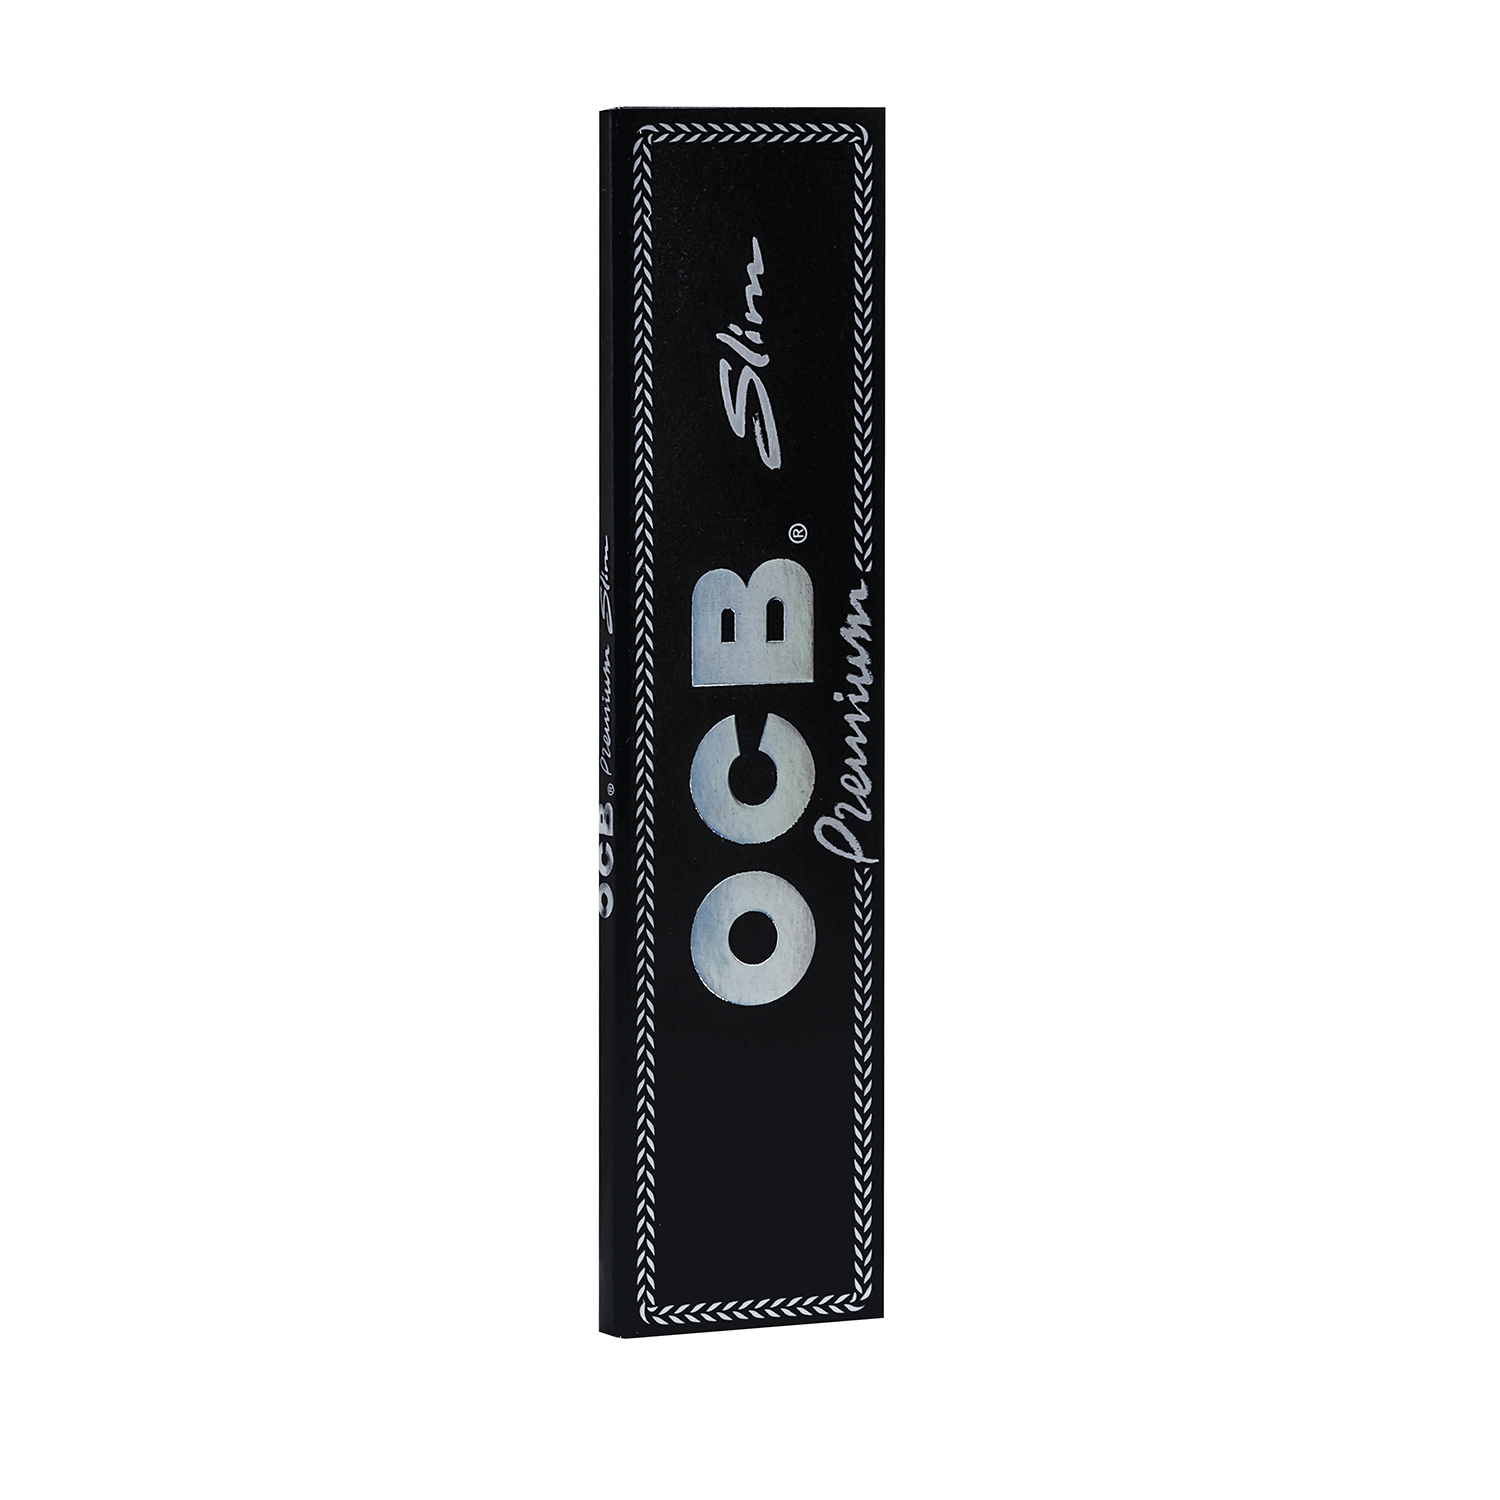 OCB Premium slim schwarz extra long 1x32 Blatt